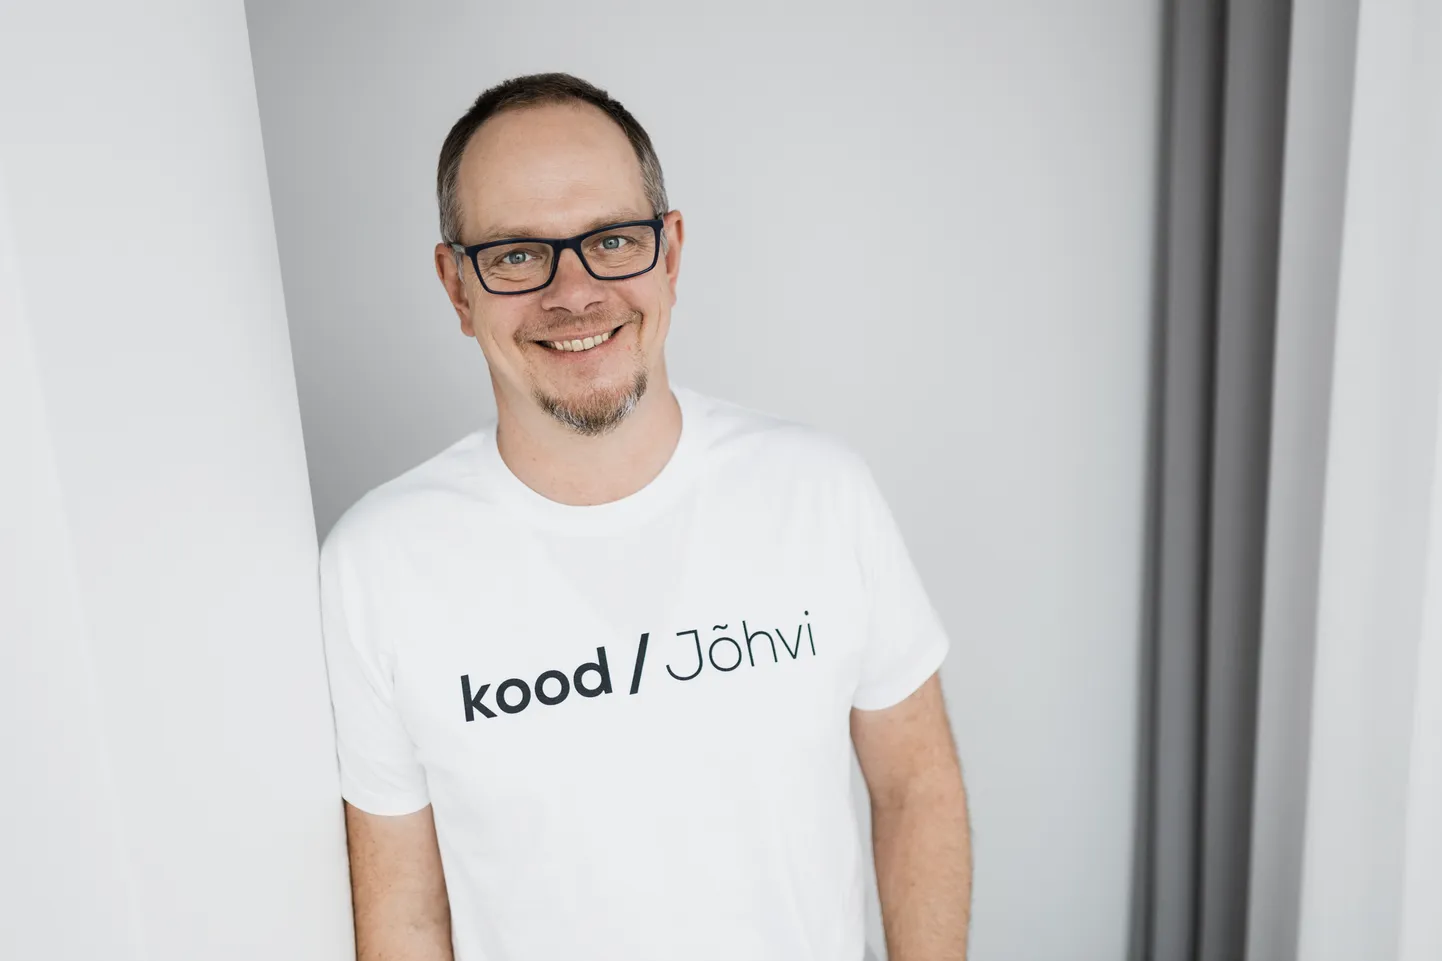 Huvi tänapäevaste tehnoloogiahariduse õppeviiside ja Jõhvi programmeerimiskooli senise kogemuse vastu tuli Soome ettevõtjatelt, ütles kood/Jõhvi tegevjuht Lauri Haav.